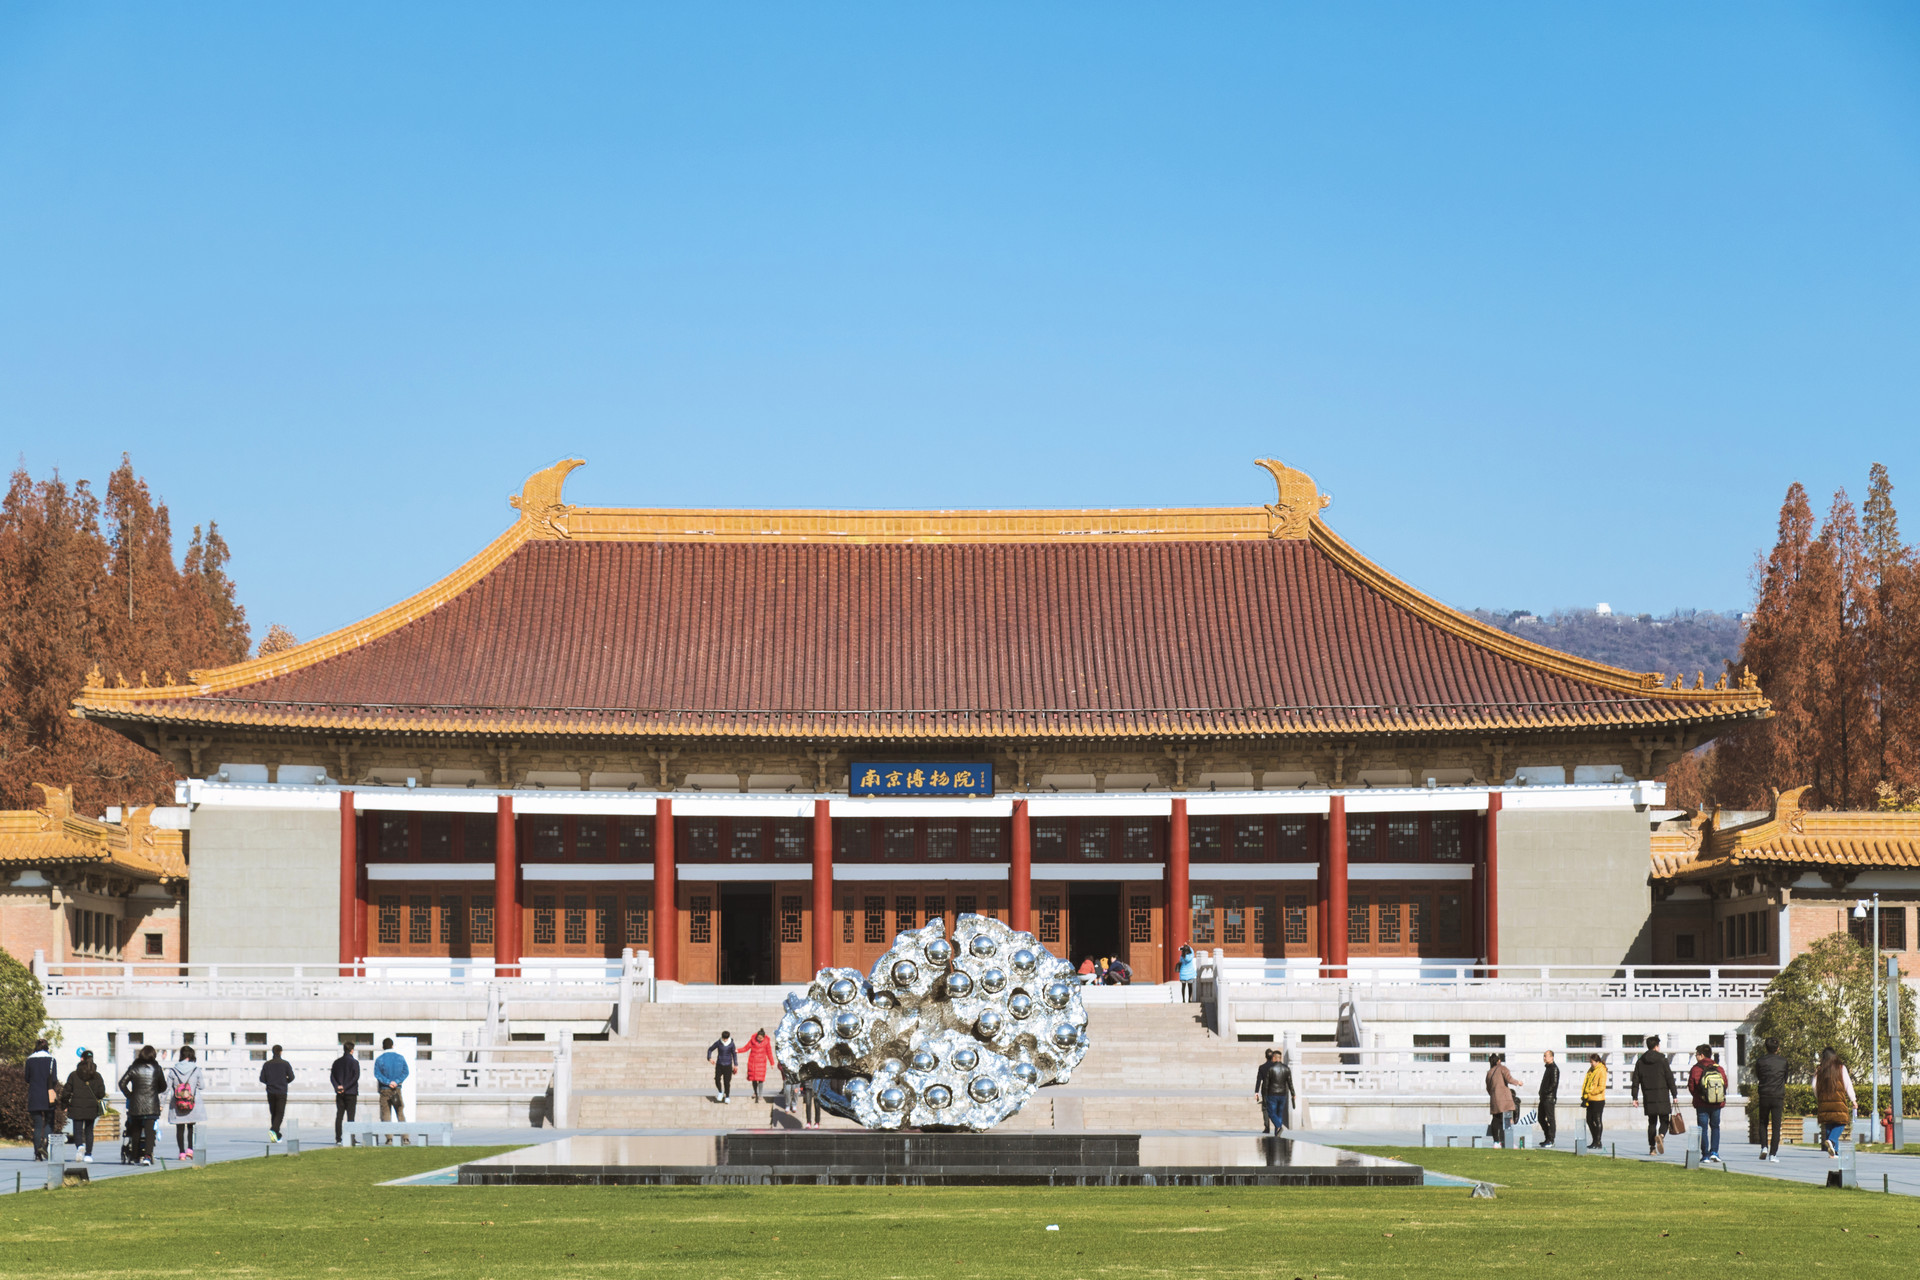 历史馆走进南京博物院正门,迎面映入眼帘的就是一栋仿辽代的古建筑